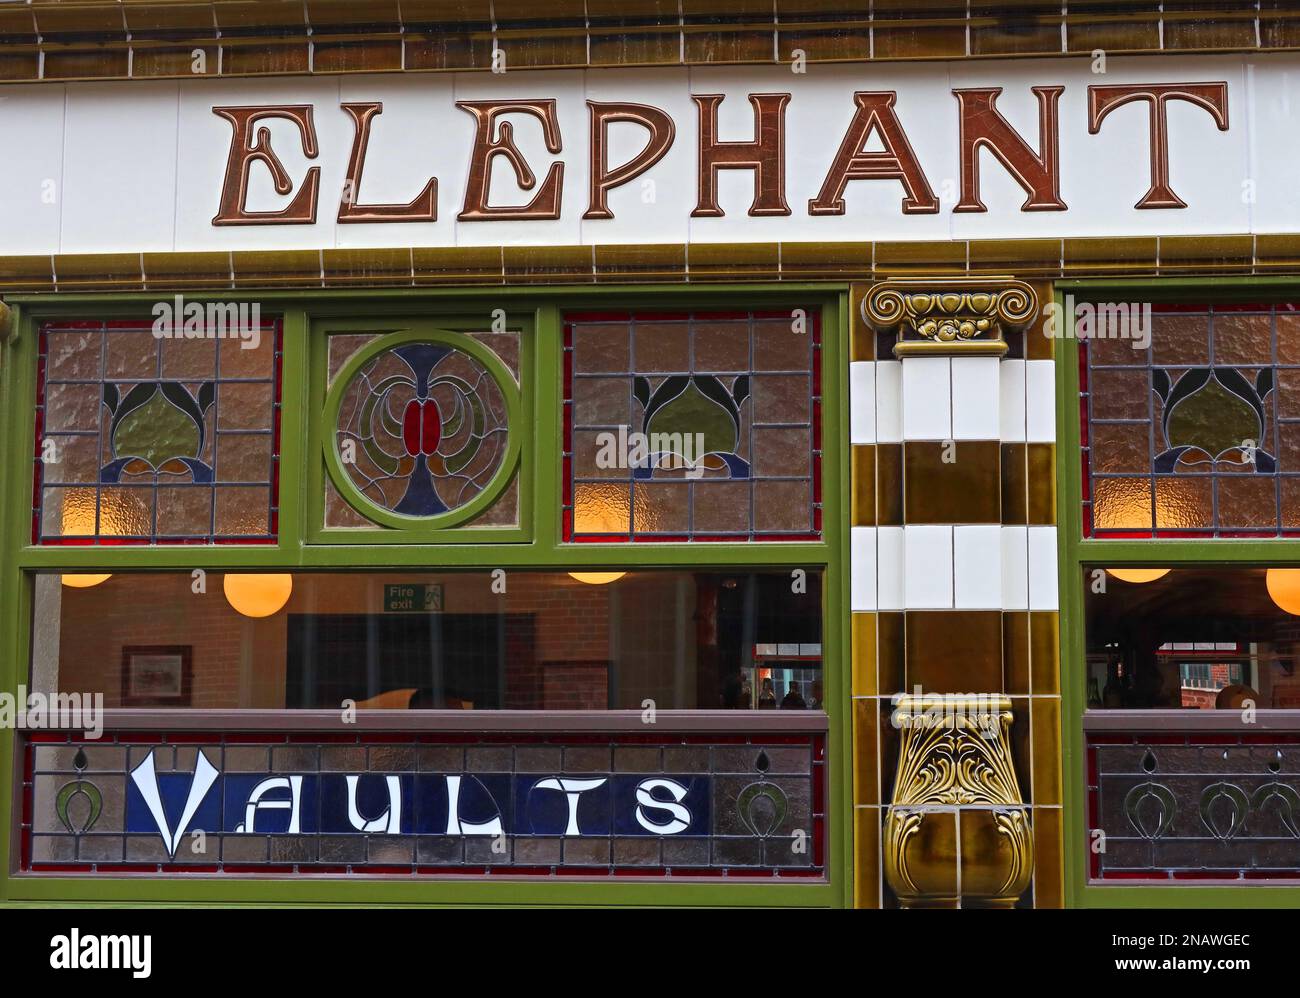 The Elephant and Castle, voûtes de pub carrelées, à l'angle de Stafford Street & Cannock Road, Wolverhampton, West Midlands, Angleterre, Royaume-Uni Banque D'Images